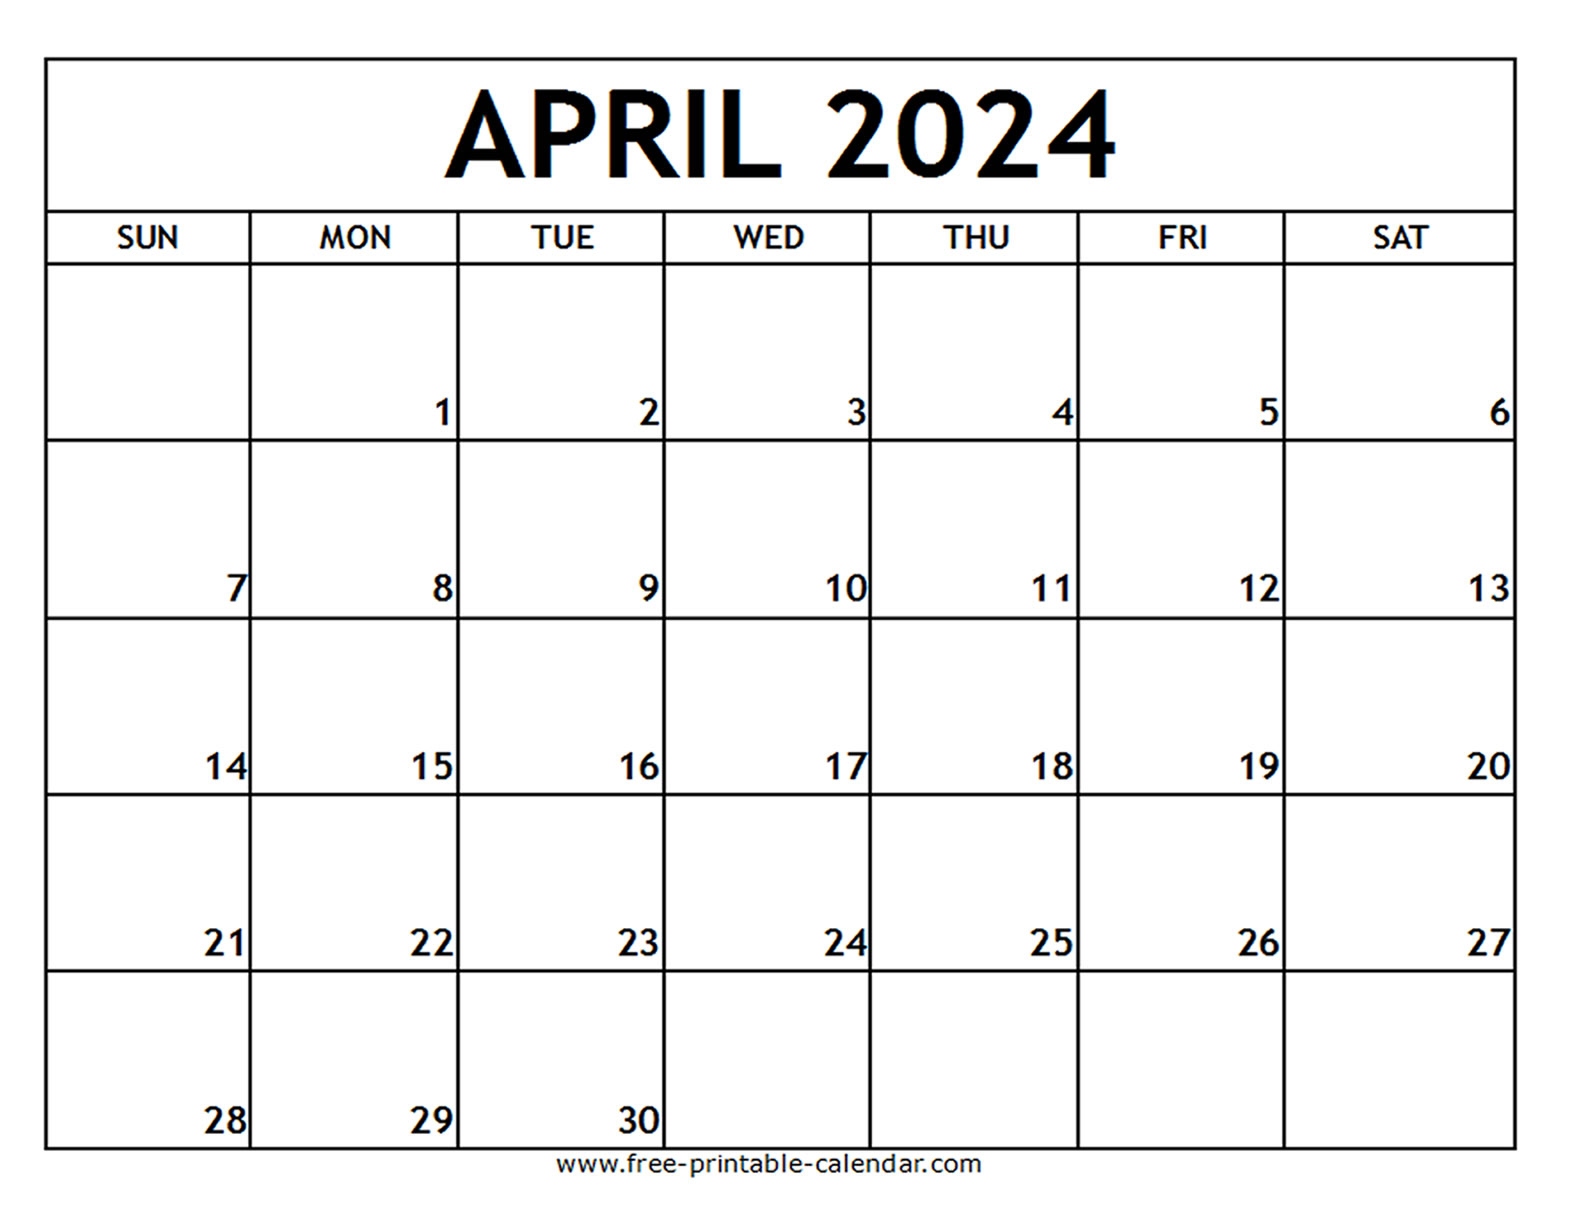 April 2024 Printable Calendar - Free-Printable-Calendar pertaining to Free Printable Calendar April May June 2024